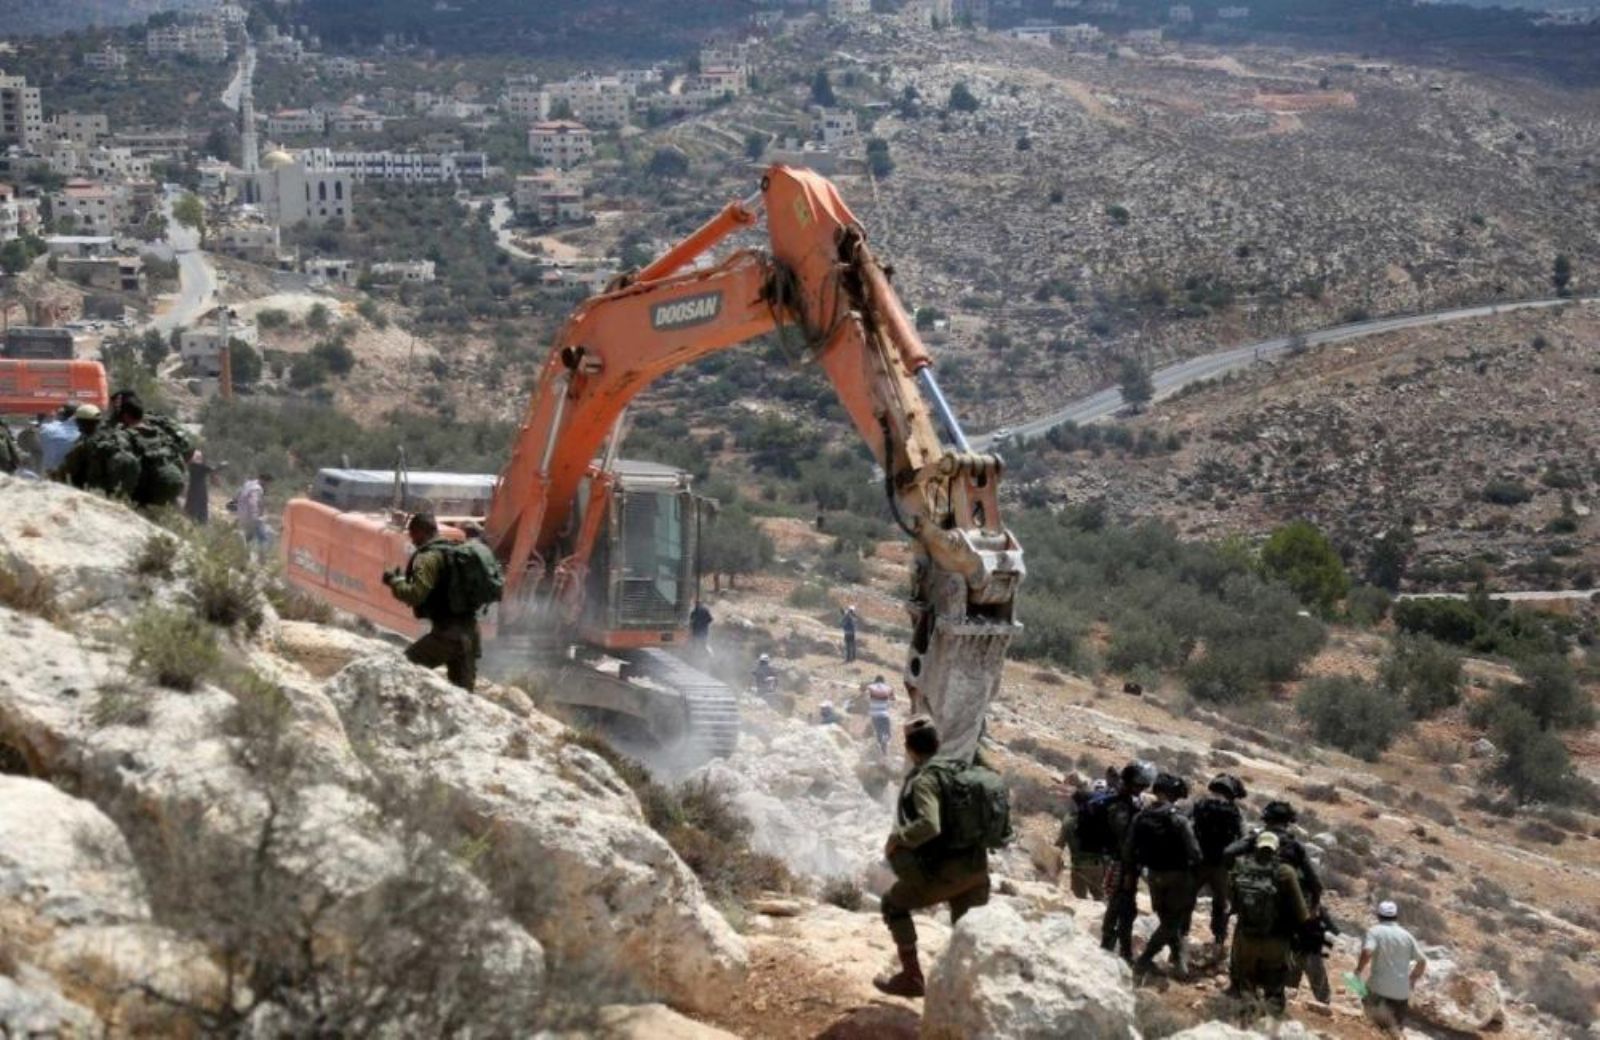 الكشف عن مصادرة الاحتلال عشرات الدونمات شرقي القدس بـ"قرار سري"